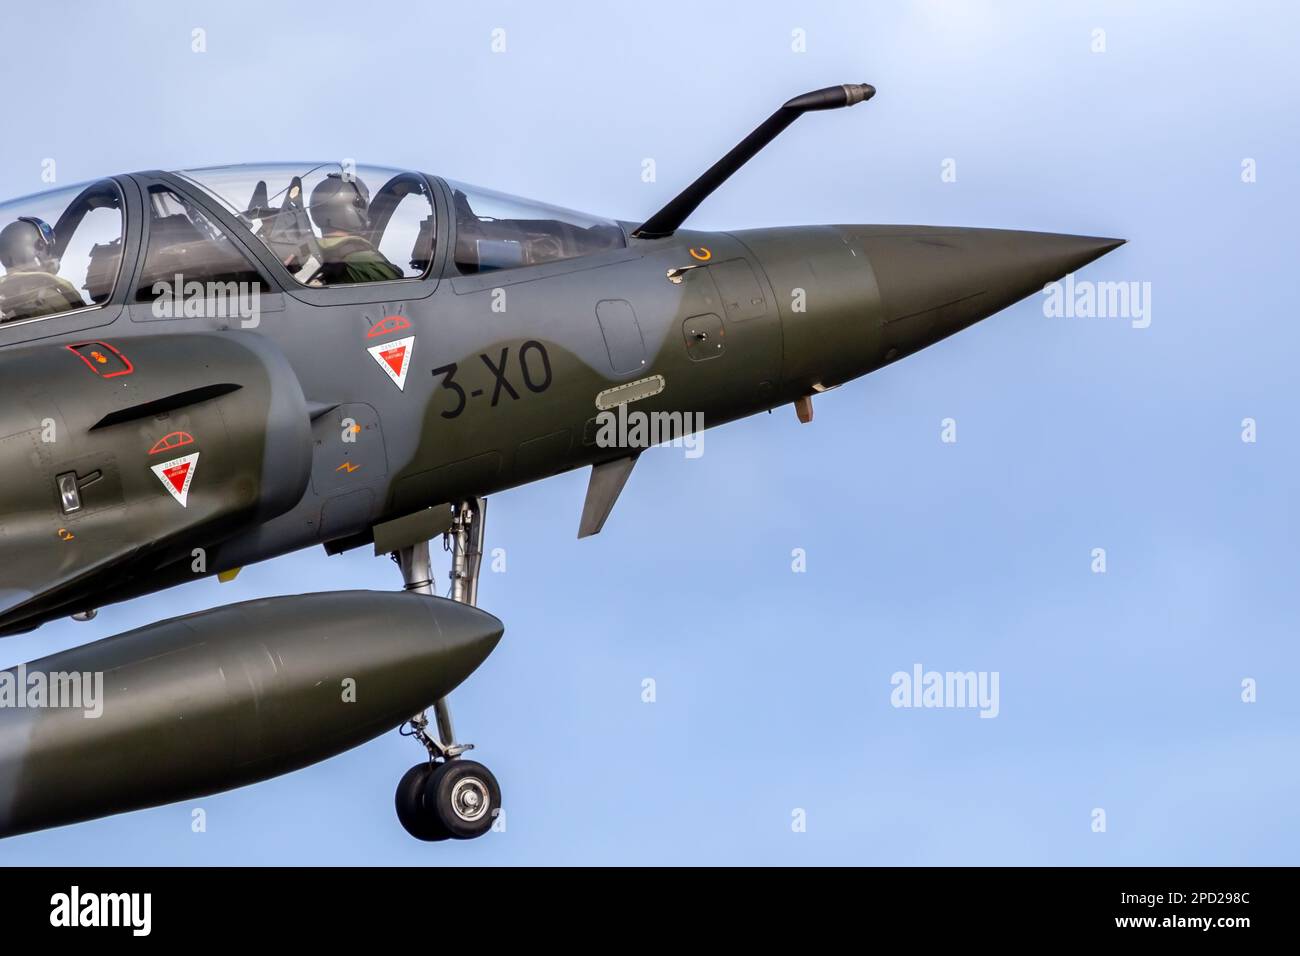 Avion de chasse Dassault Mirage 2000 de la Force aérienne française arrivant à la base aérienne de Leeuwarden, pays-Bas - 30 mars 2022 Banque D'Images